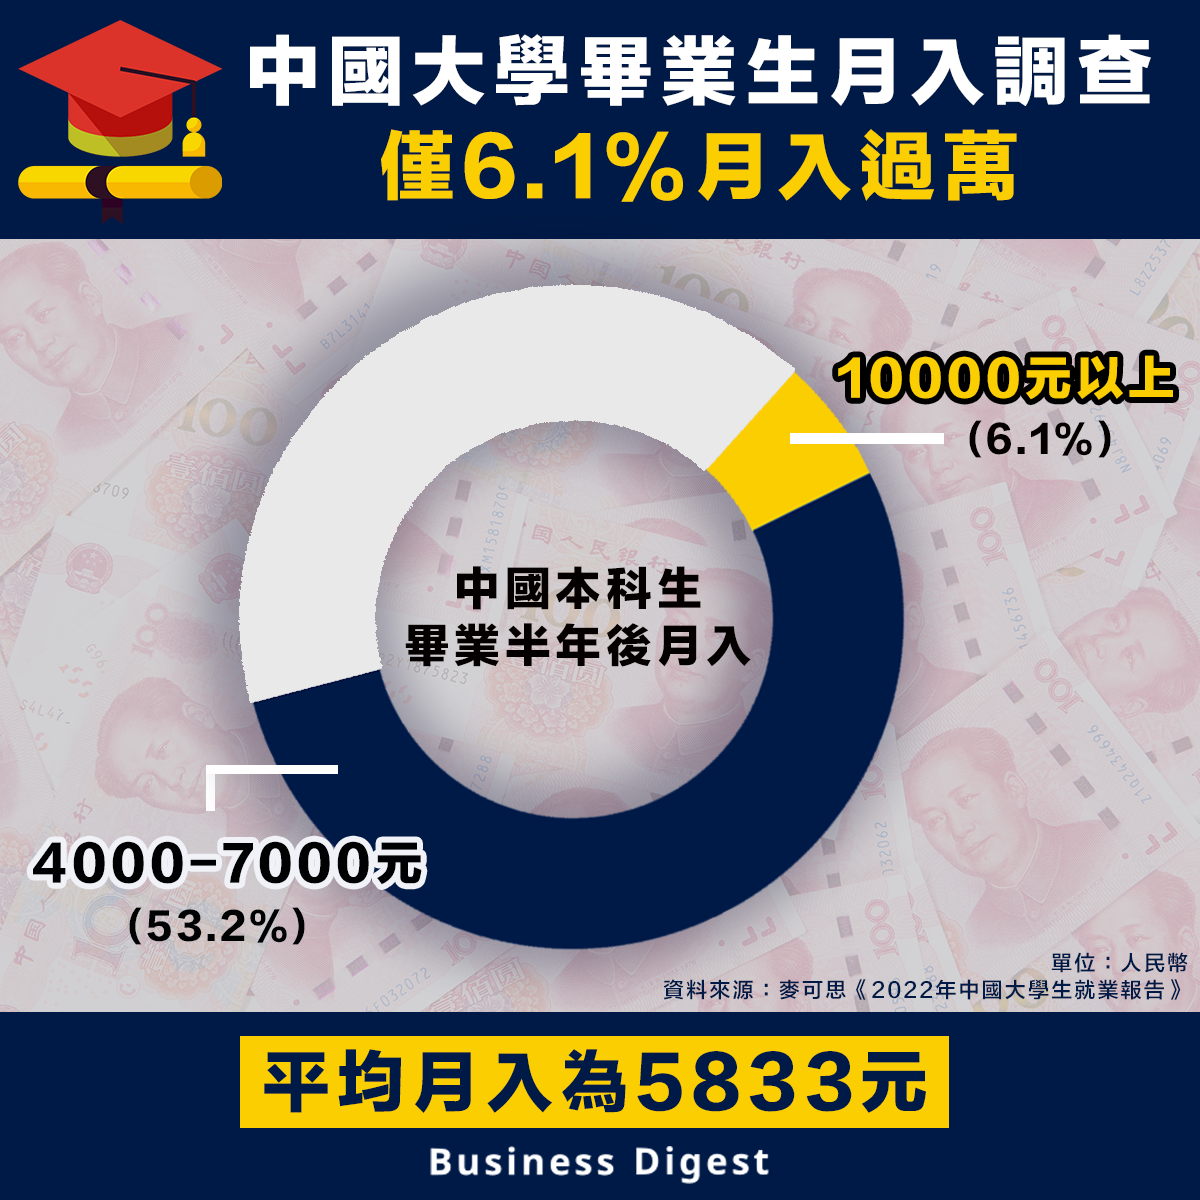 【畢業月入】中國大學畢業生月入調查，僅6.1%月入過萬